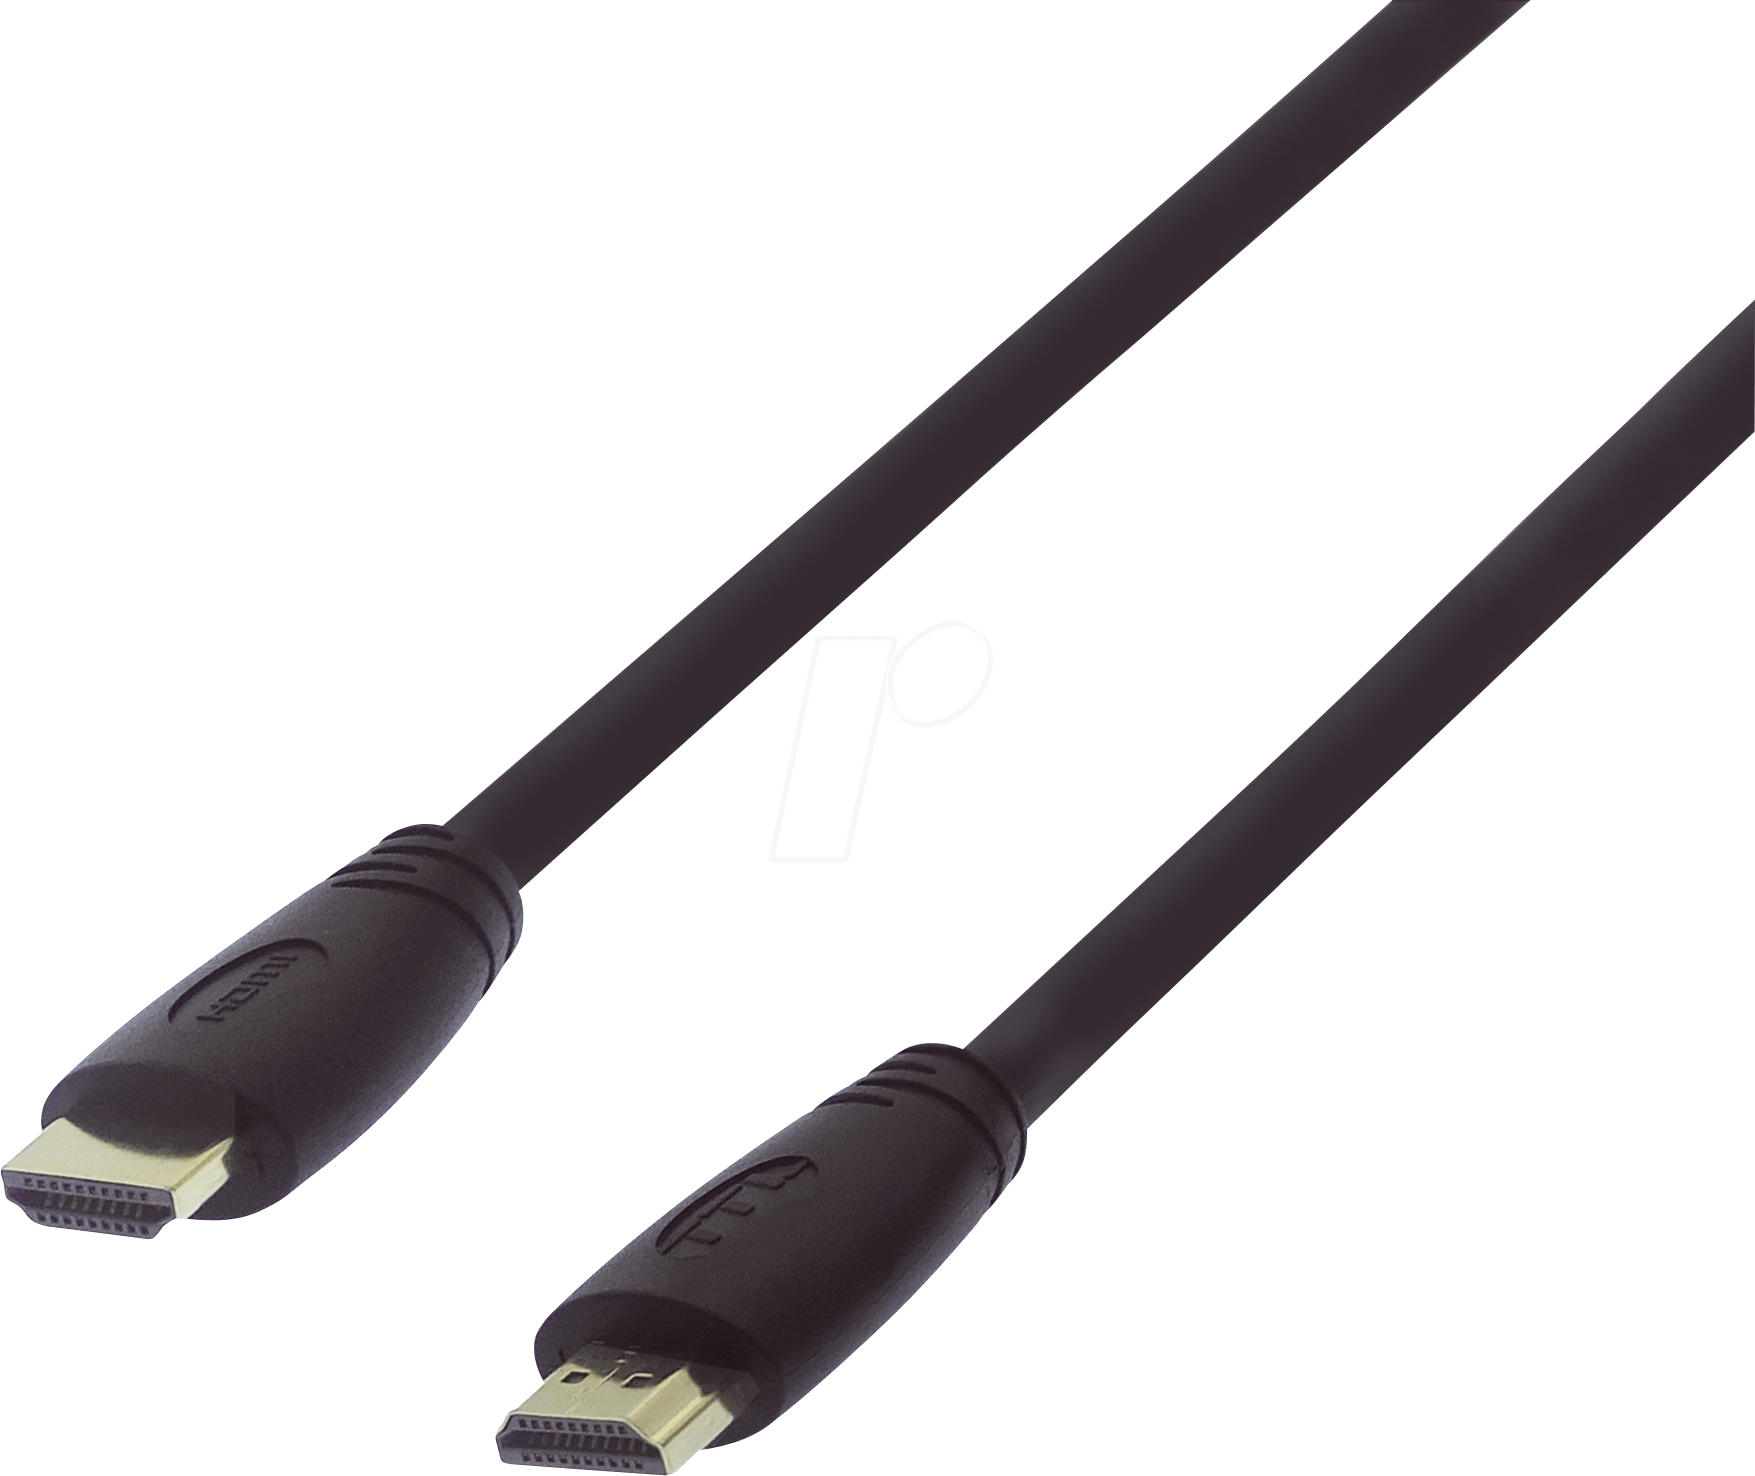 HDMI-MME-1,0UF - UltraFlex HDMI High-Speed Kabel, 1,0m von TTL NETWORK